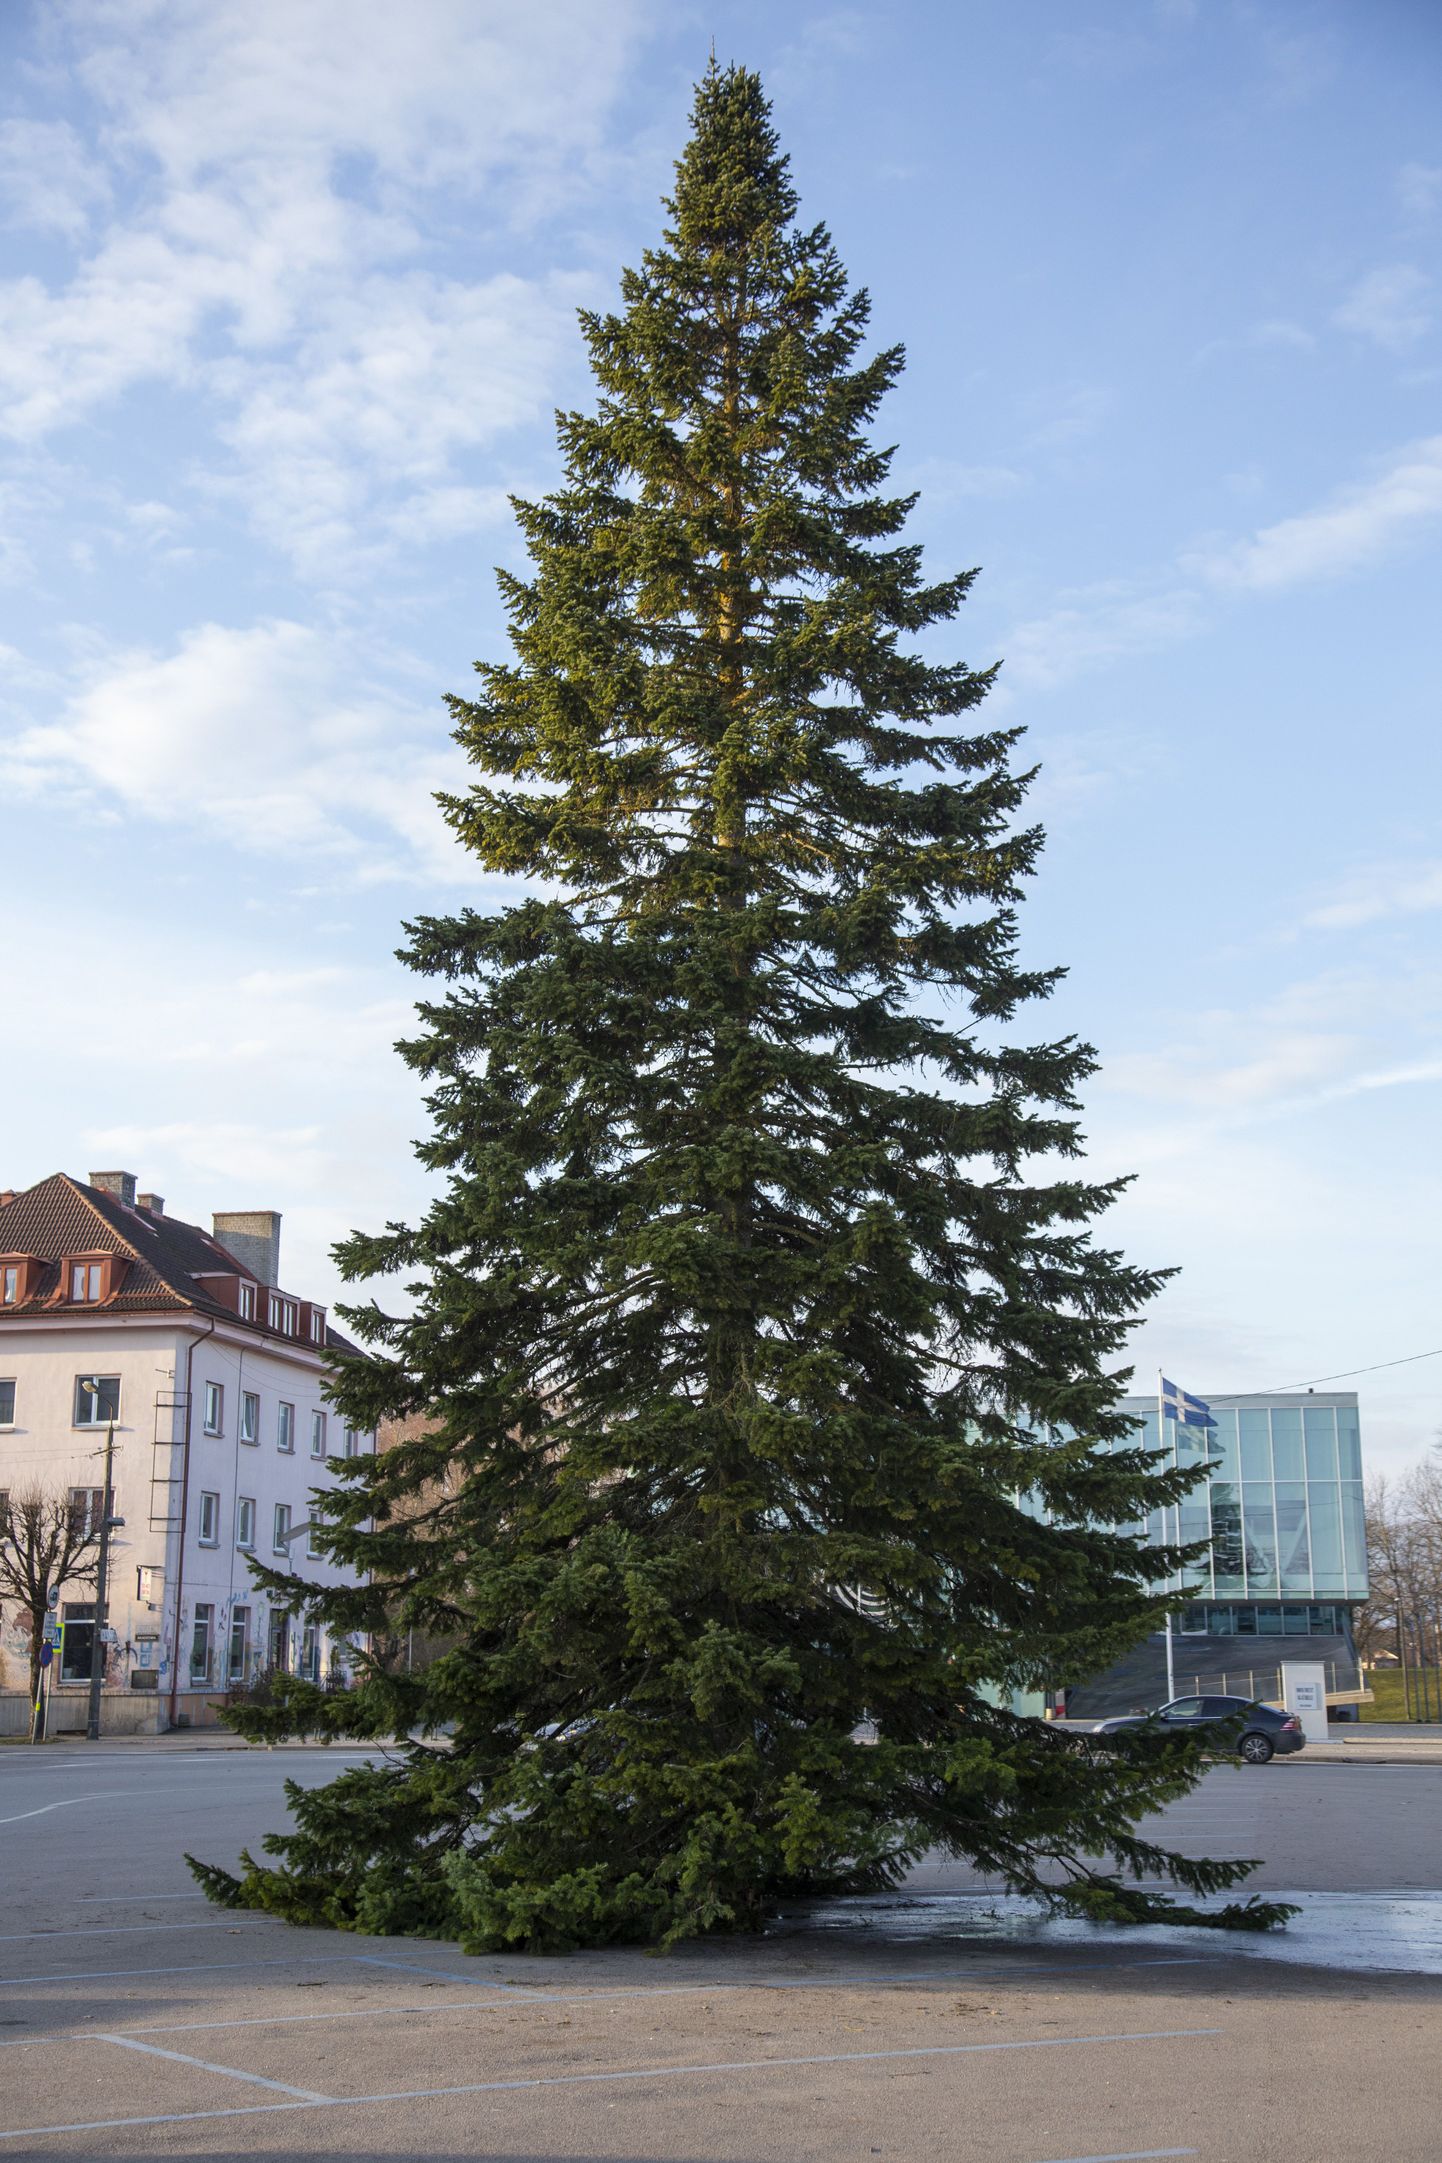 Helsingi on esimeseks neljast Läänemere rannikulinnast, mille jõulupuudest valmivad sellel aastal toonikud. Veel lähevad kasutusse ka Kuressaare, Pärnu ja Soome linna Loviisa jõulupuud.